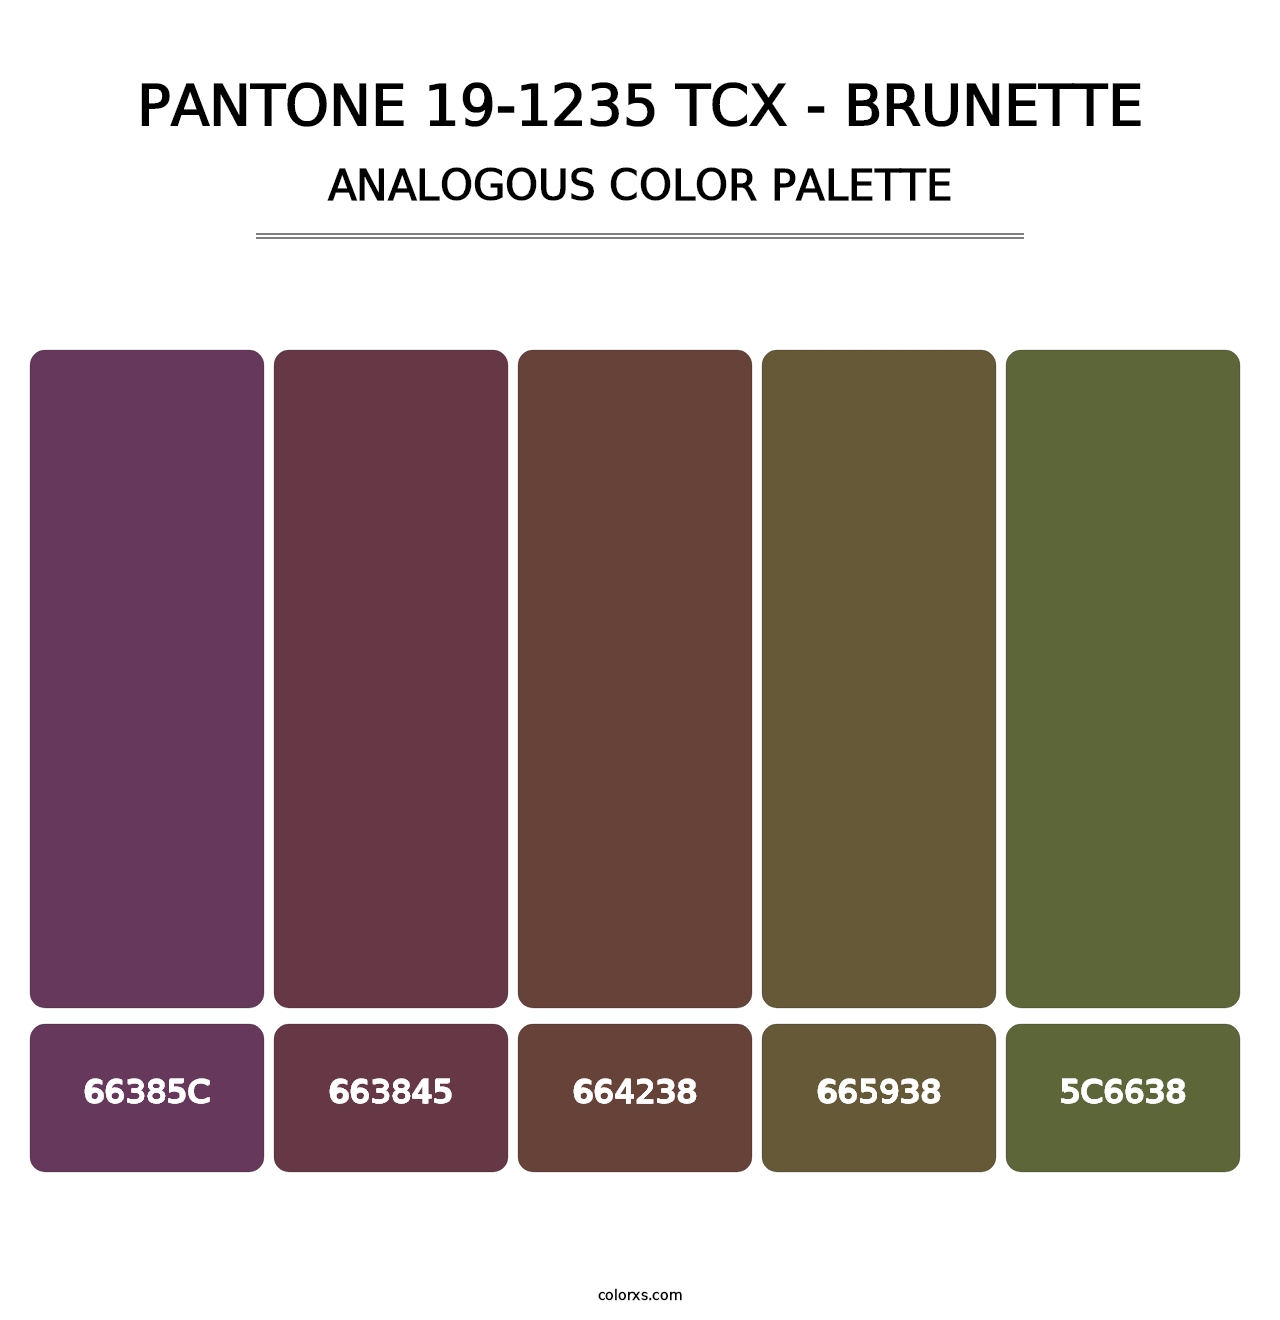 PANTONE 19-1235 TCX - Brunette - Analogous Color Palette